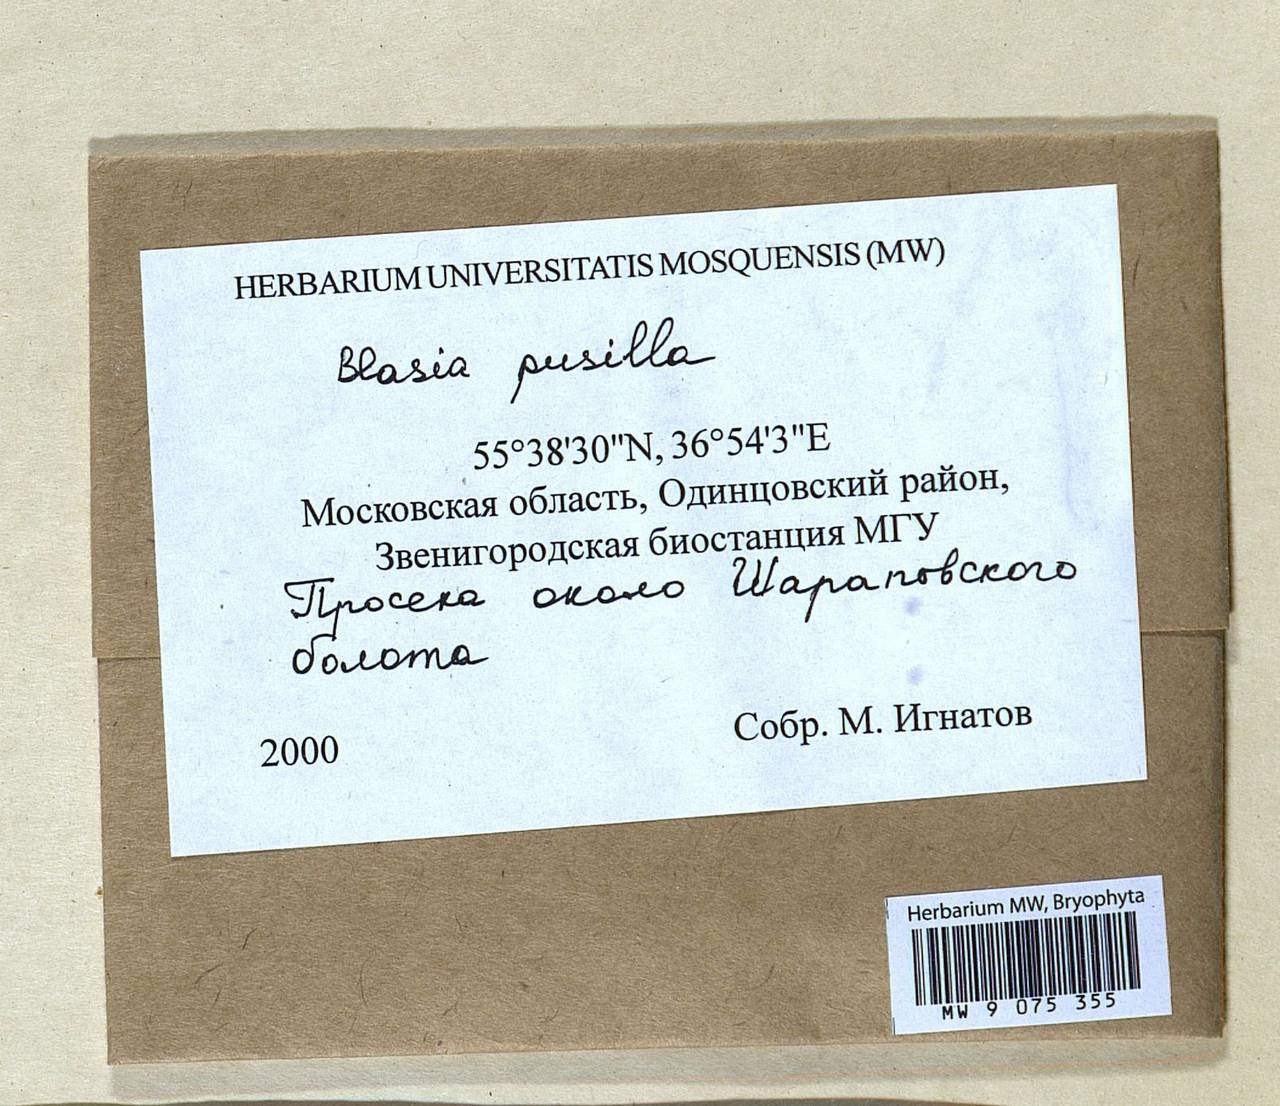 Blasia pusilla L., Гербарий мохообразных, Мхи - Москва и Московская область (B6a) (Россия)